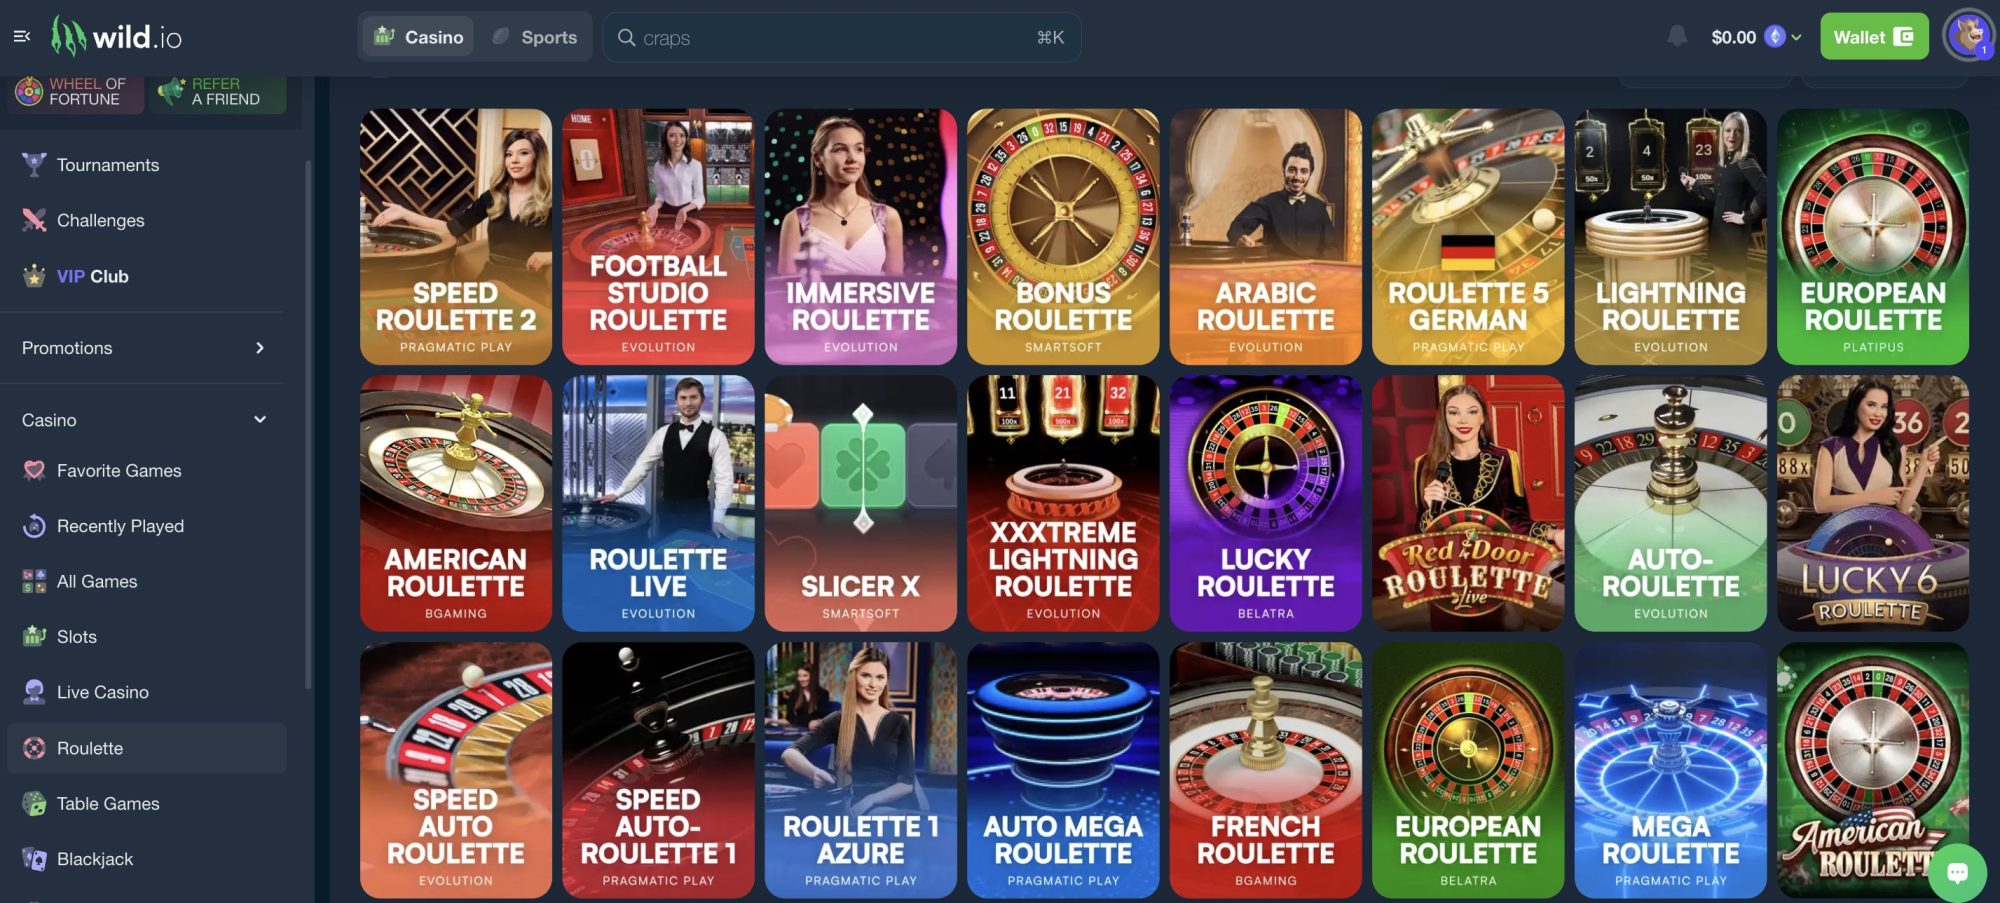 Live roulette games Wild.io